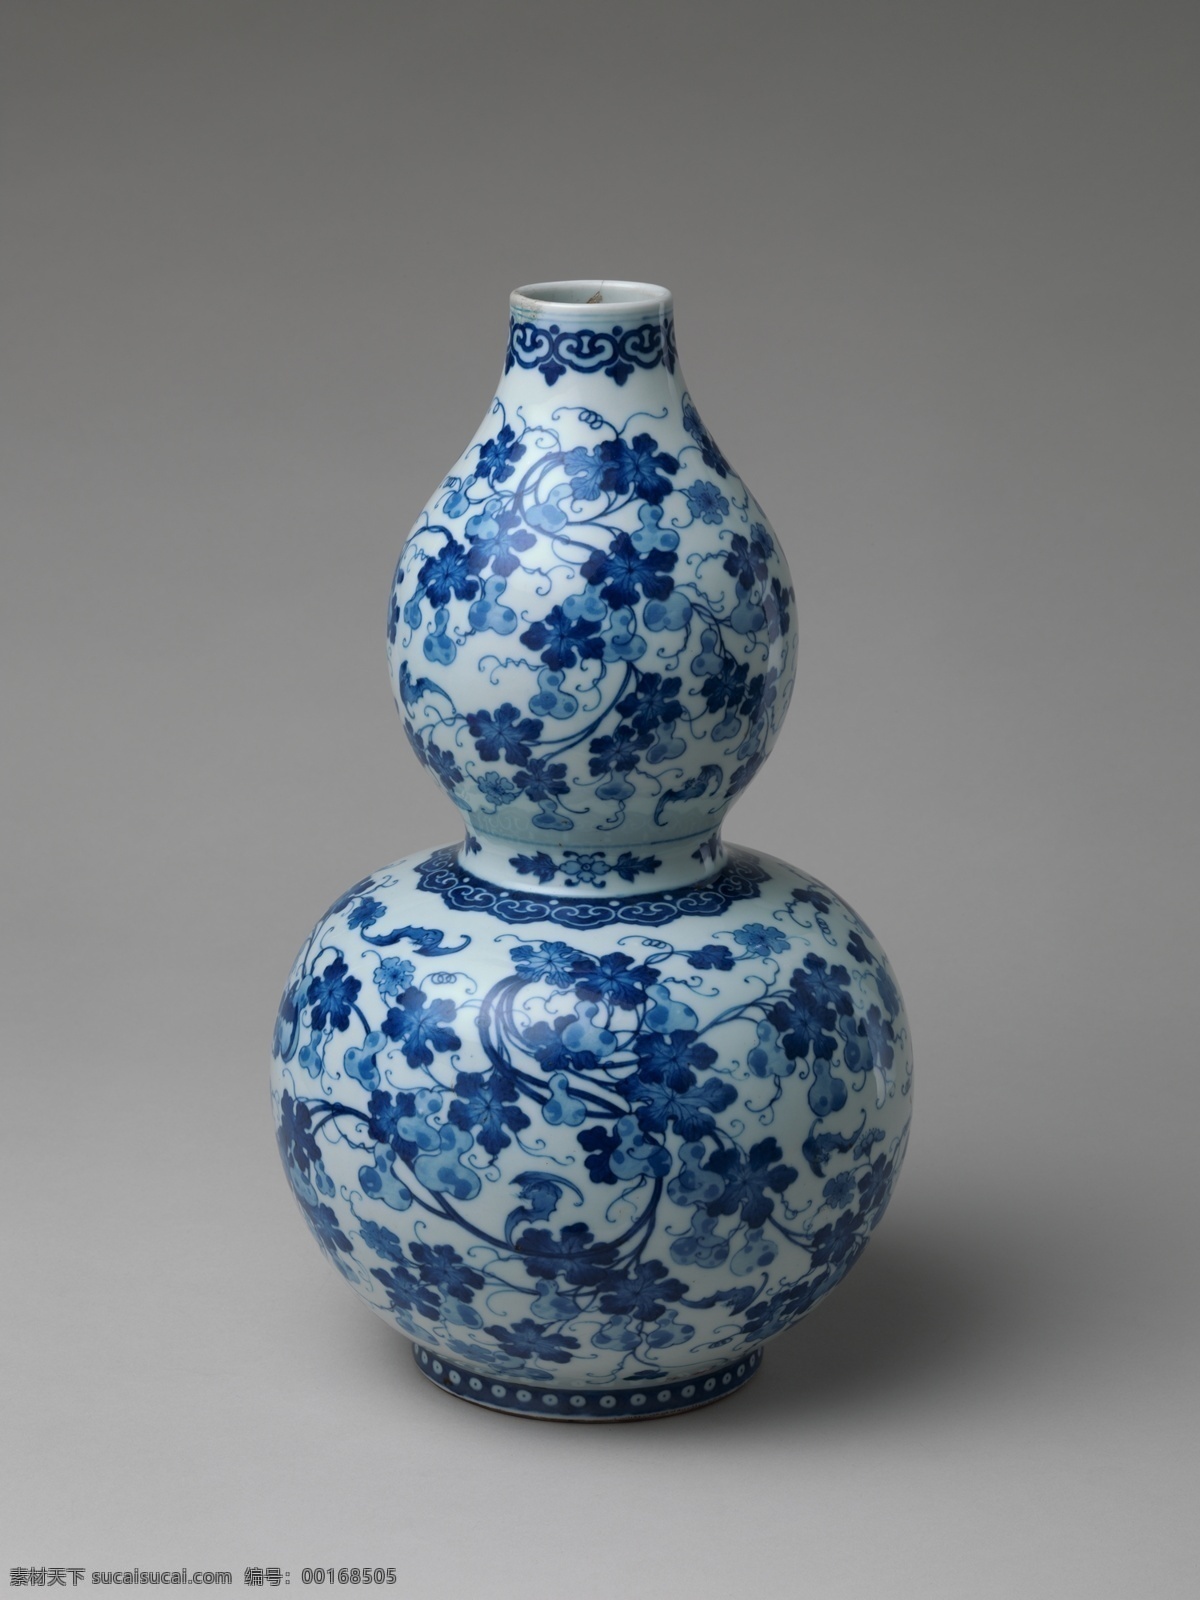 葫芦瓶 青花瓷 青花 瓷器 陶器 瓶子 葫芦 传统文化 文化艺术